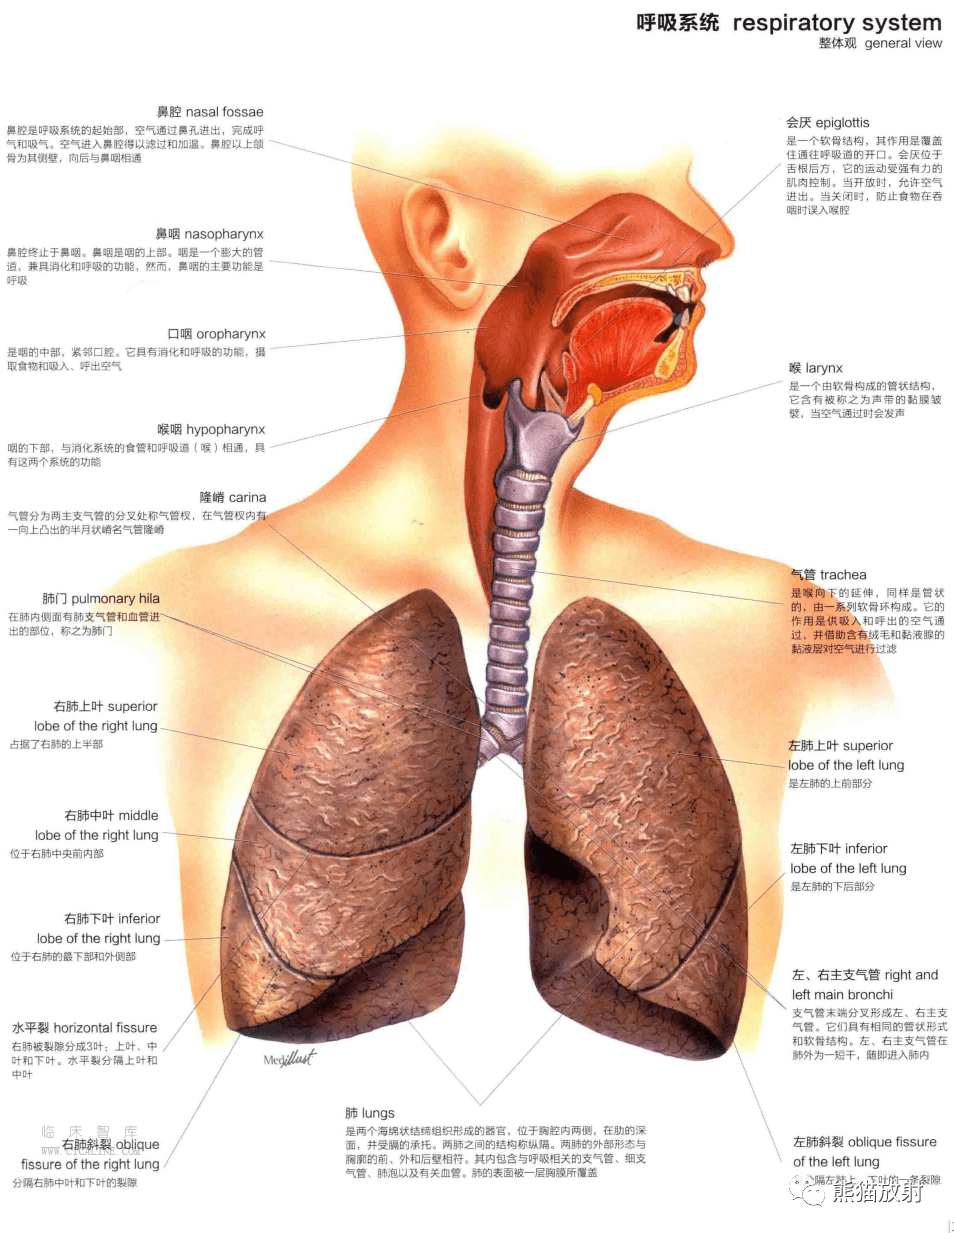 人体图谱丨呼吸系统上呼吸道肺支气管树肺泡